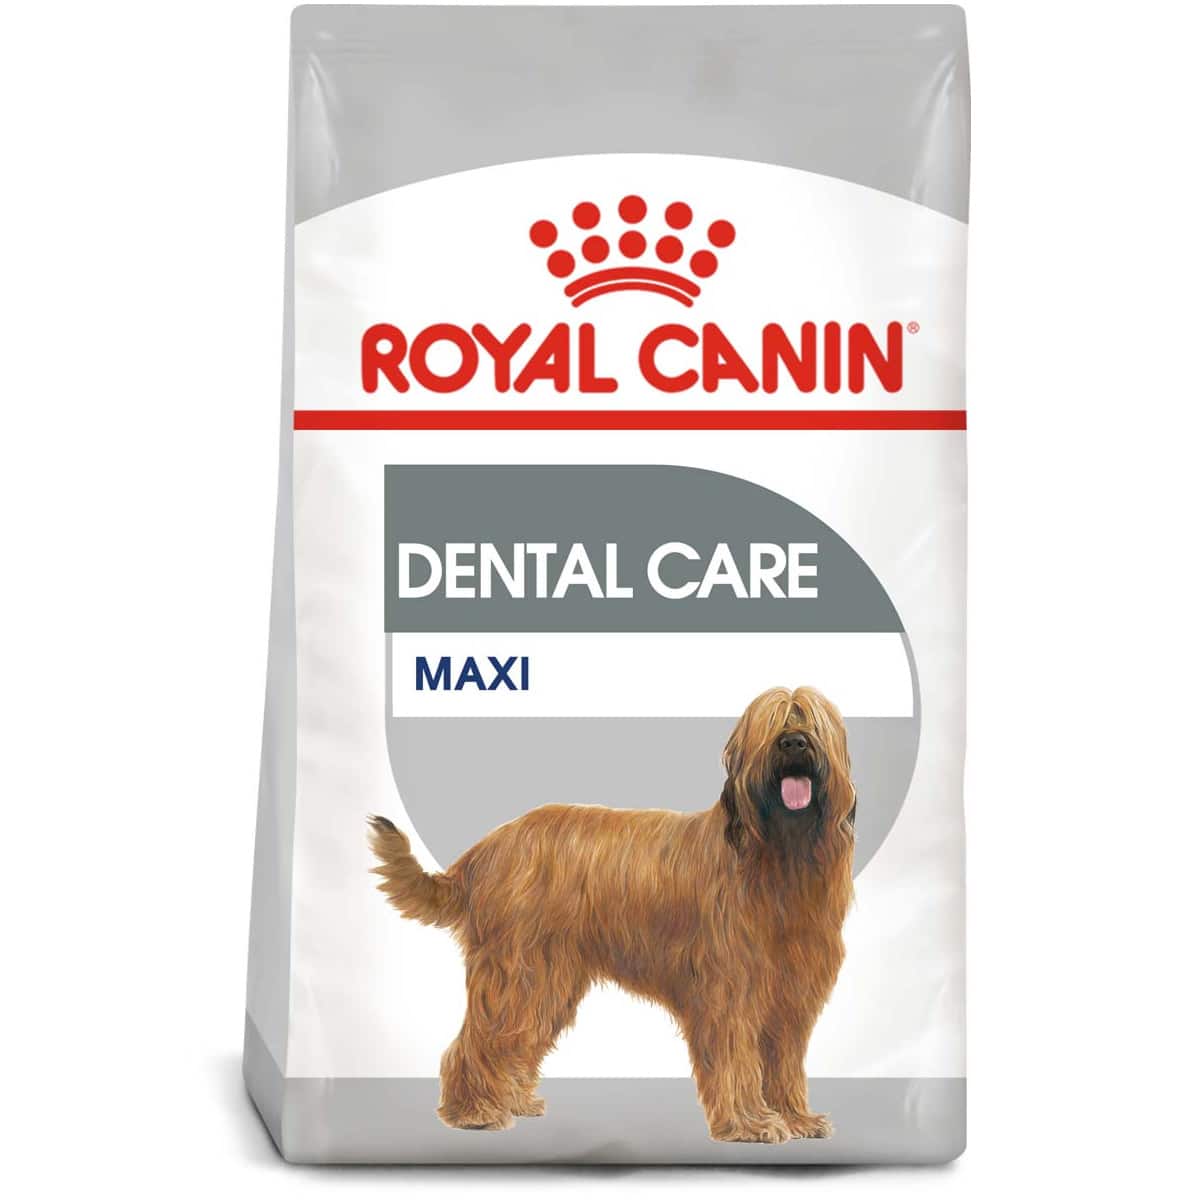 ROYAL CANIN DENTAL CARE MAXI Trockenfutter für große Hunde mit empfindlichen Zähnen 9kg